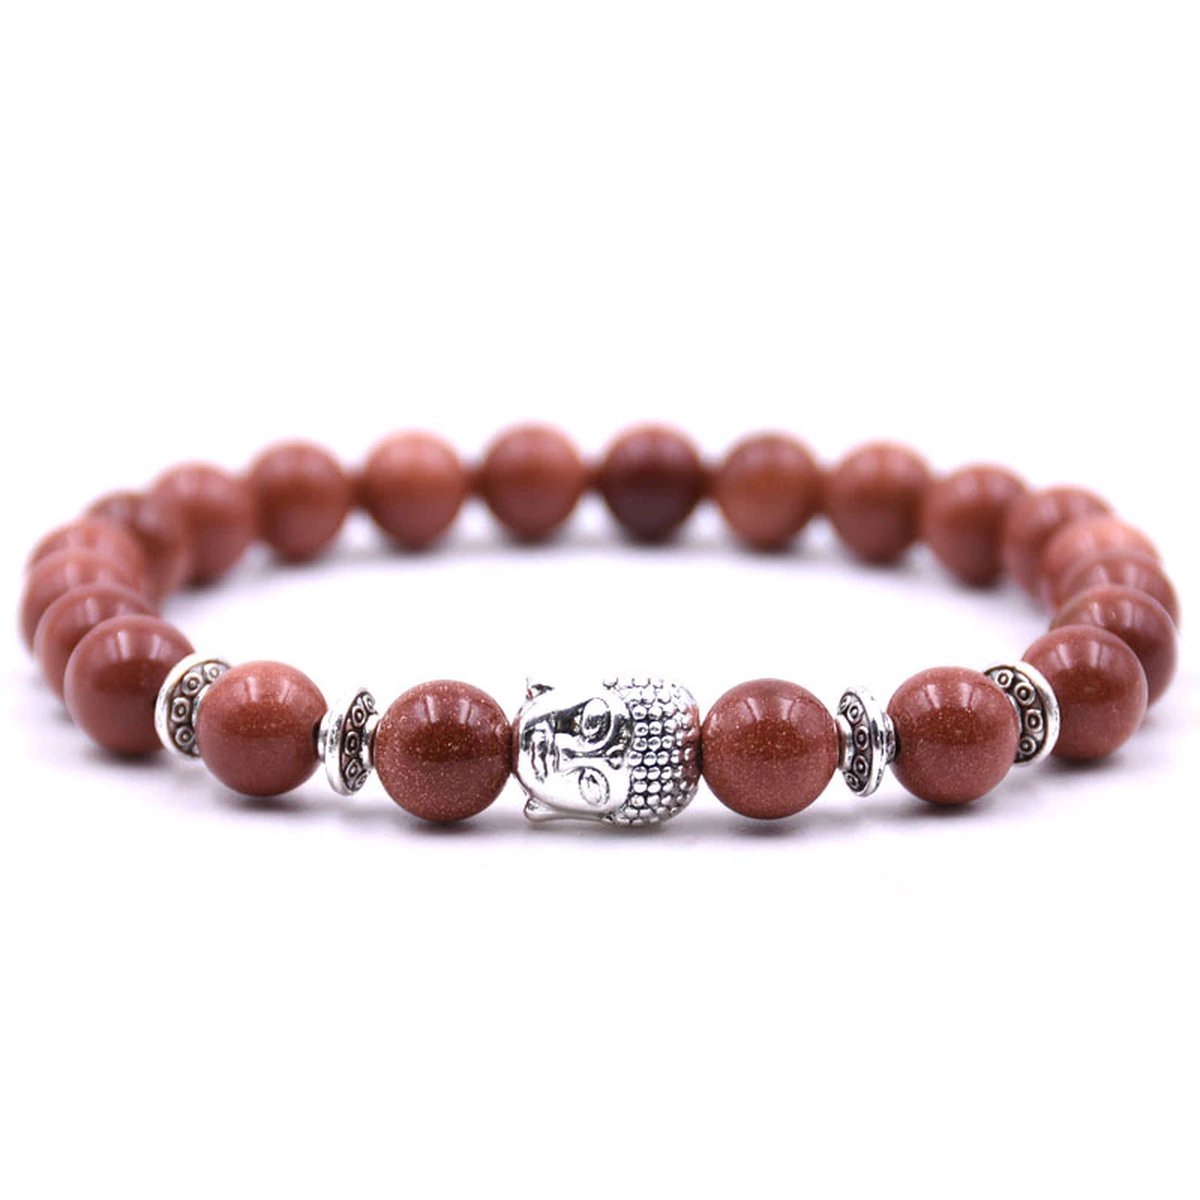 Armband met buddha bedel - Armband natuursteen - Kralen band - Dames / Heren / Unisex / Cadeau - Cadeau voor man & vrouw - Zilveren Buddha - Elastisch - Bordeaux